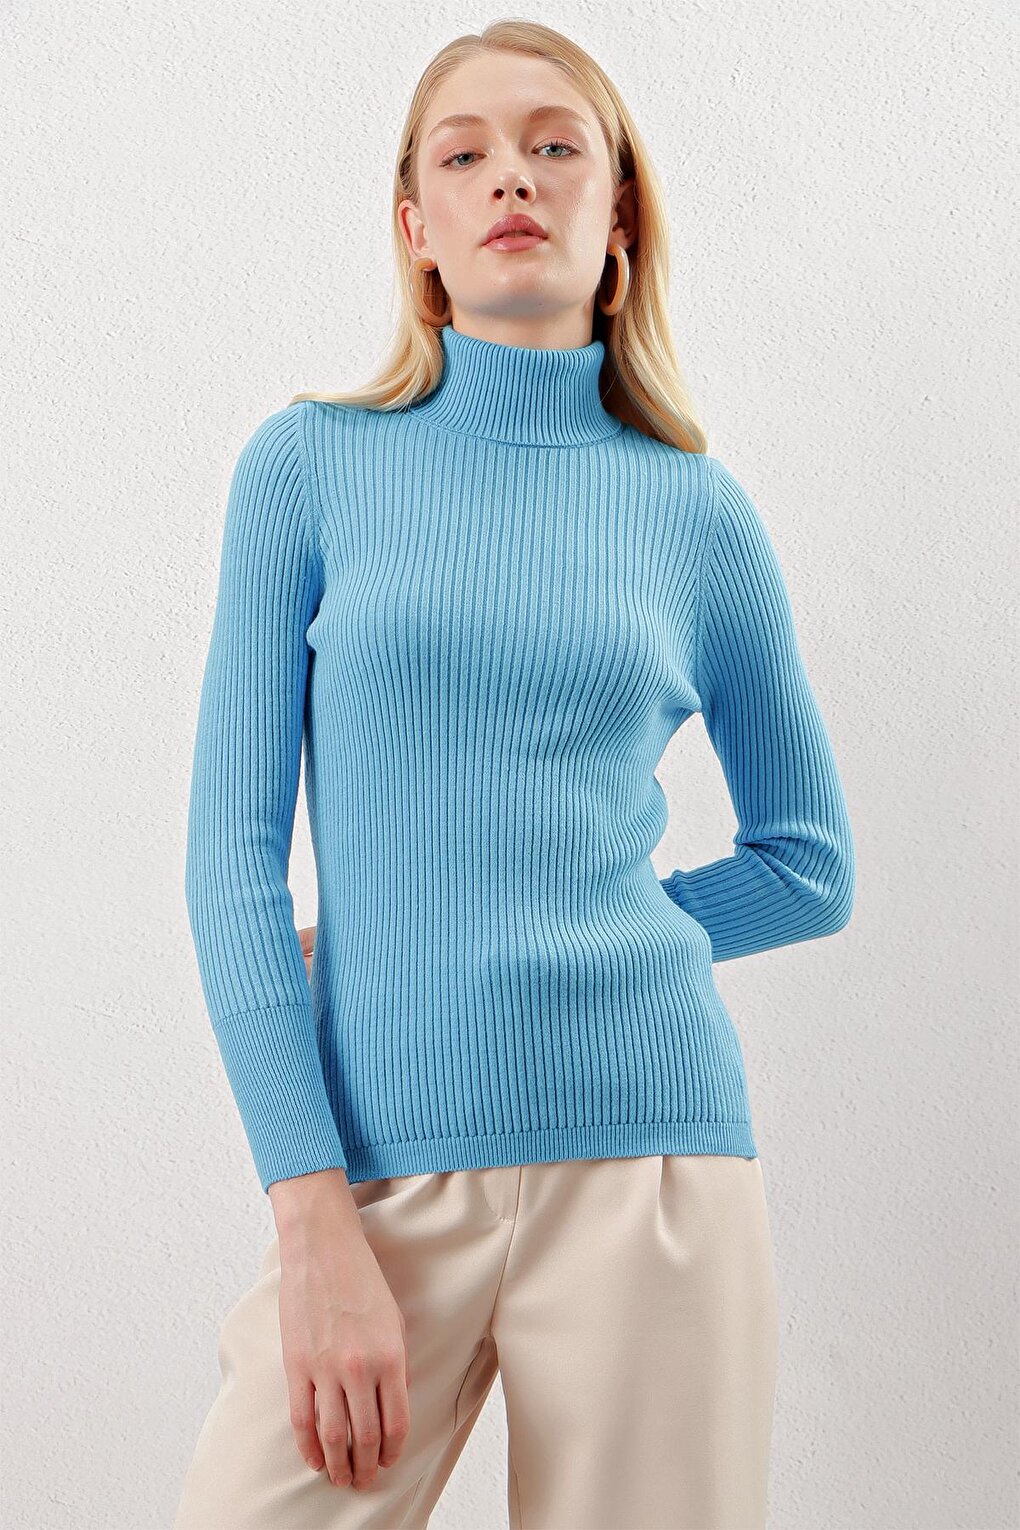 Женская голубая водолазка в рубчик, базовый трикотаж, свитер Z Giyim